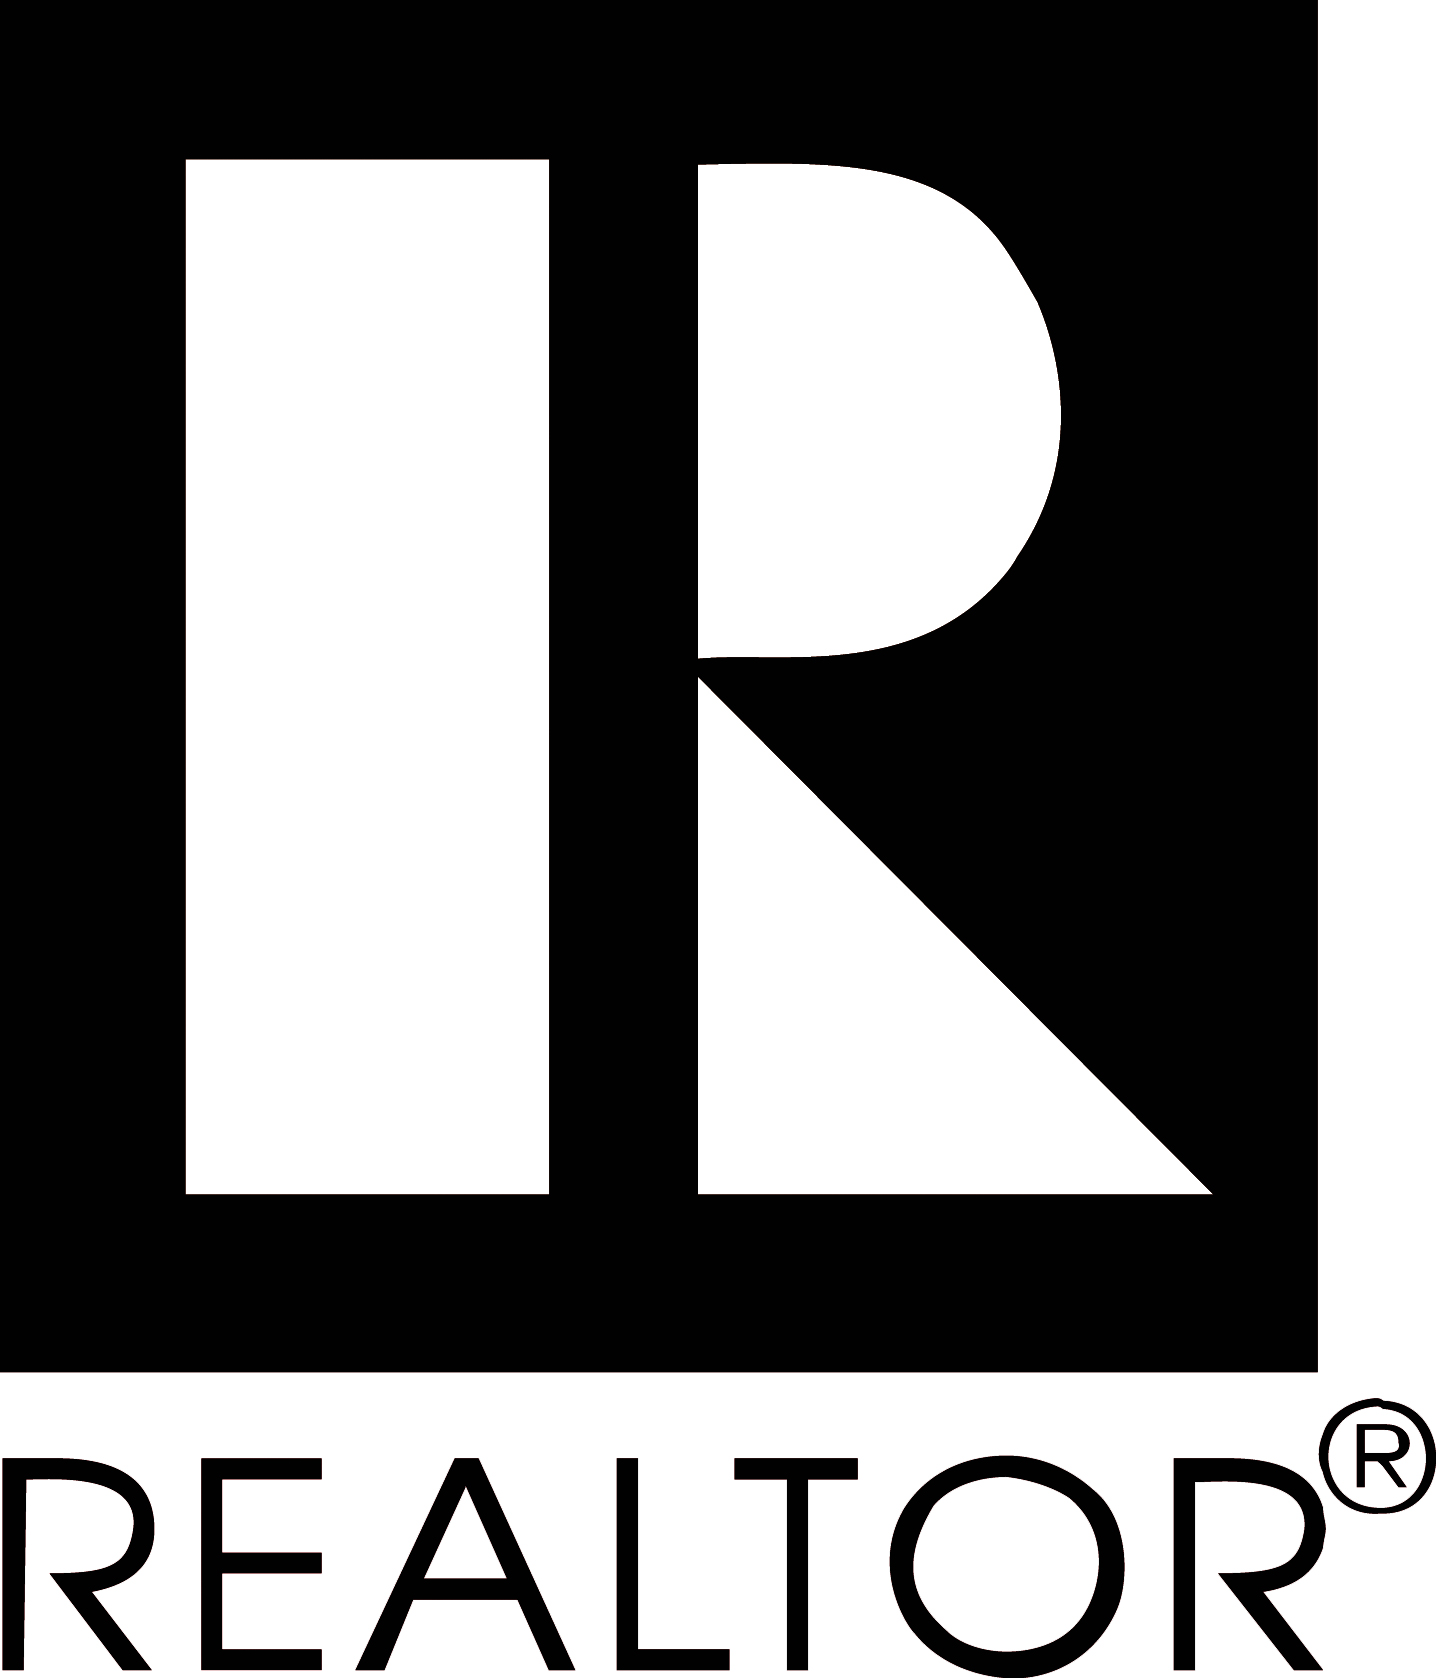 Realtor Logo - Downloadable Real Estate Industry Logos - Wisconsin REALTORS ...